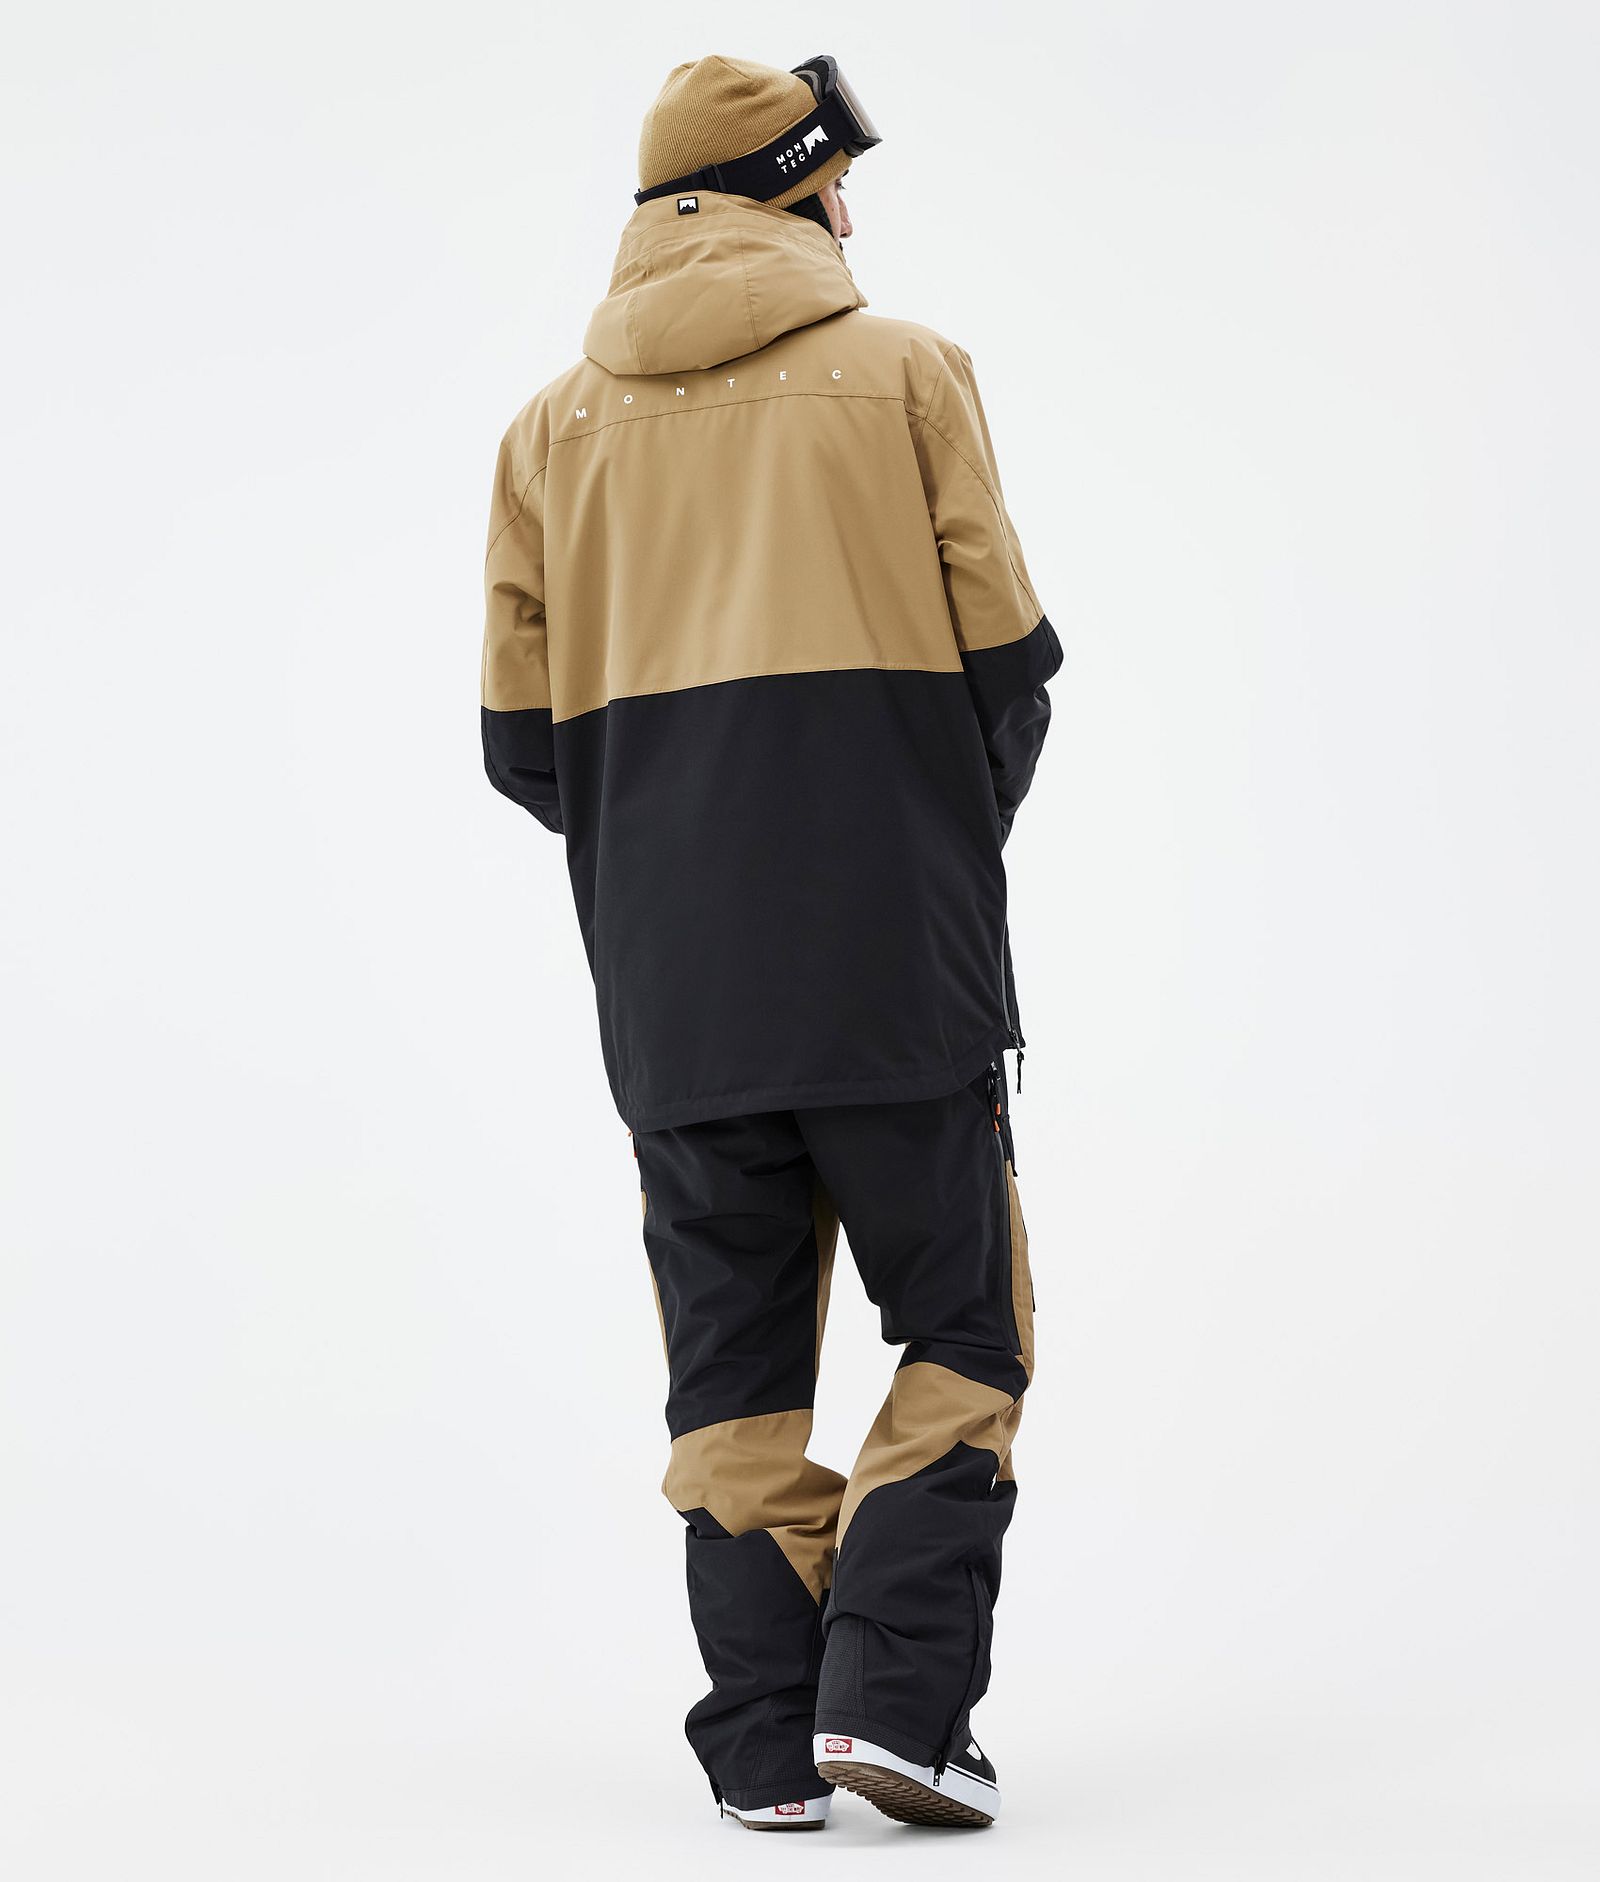 Dune Snowboard Jacket Men Gold/Black, Image 5 of 9